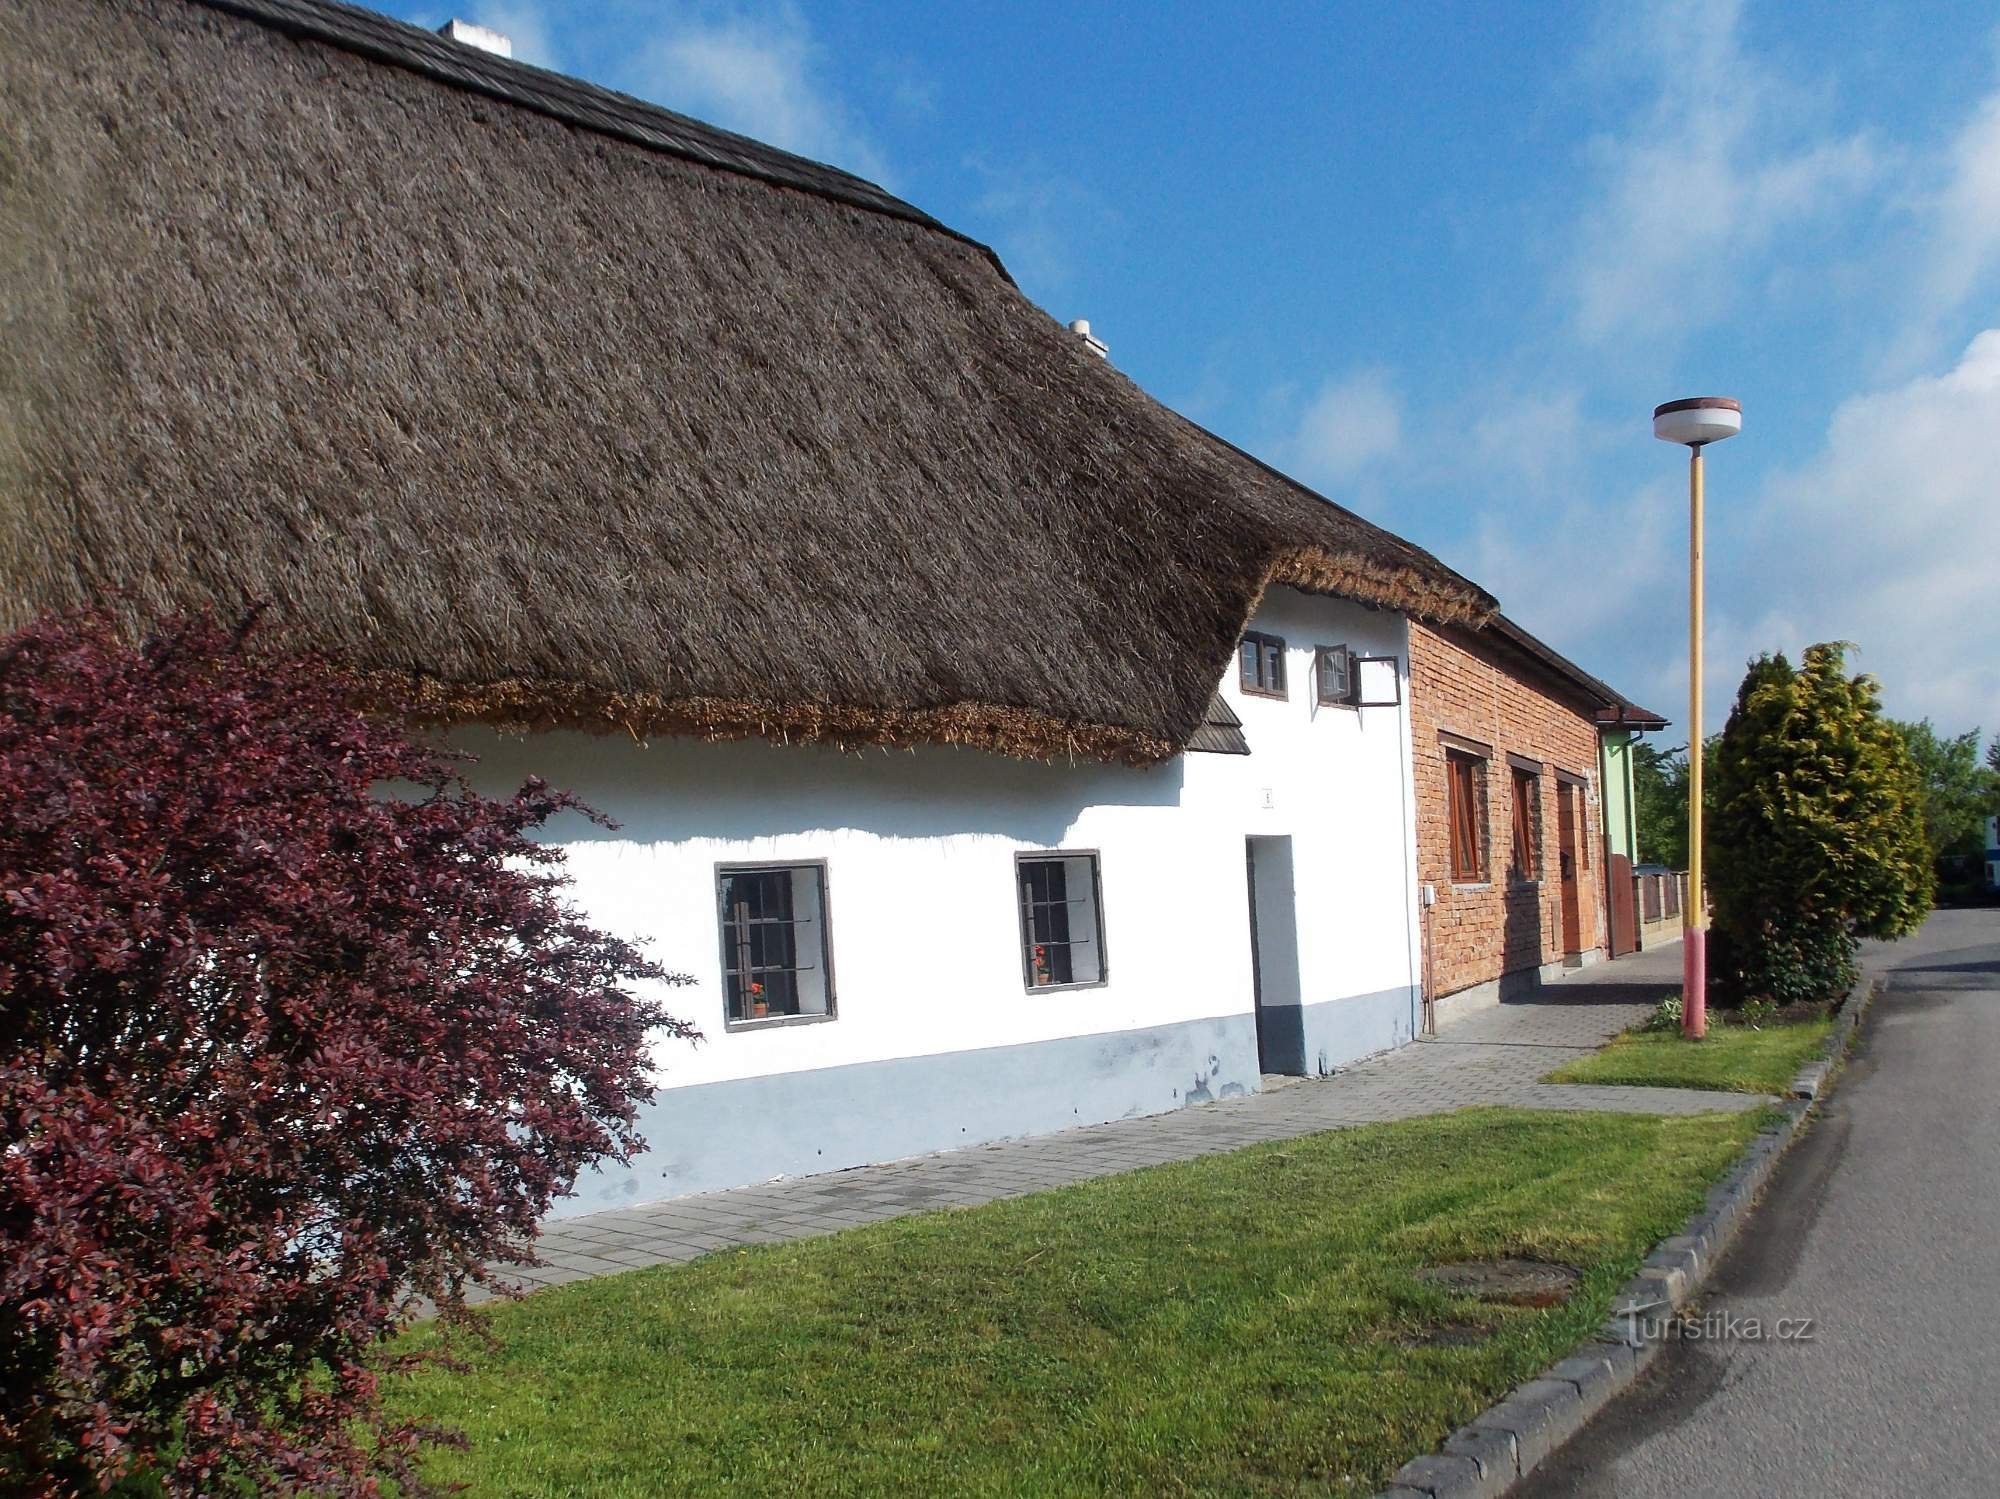 Utflykt till friluftsmuseet och väderkvarnen i Rymice nära Zlín